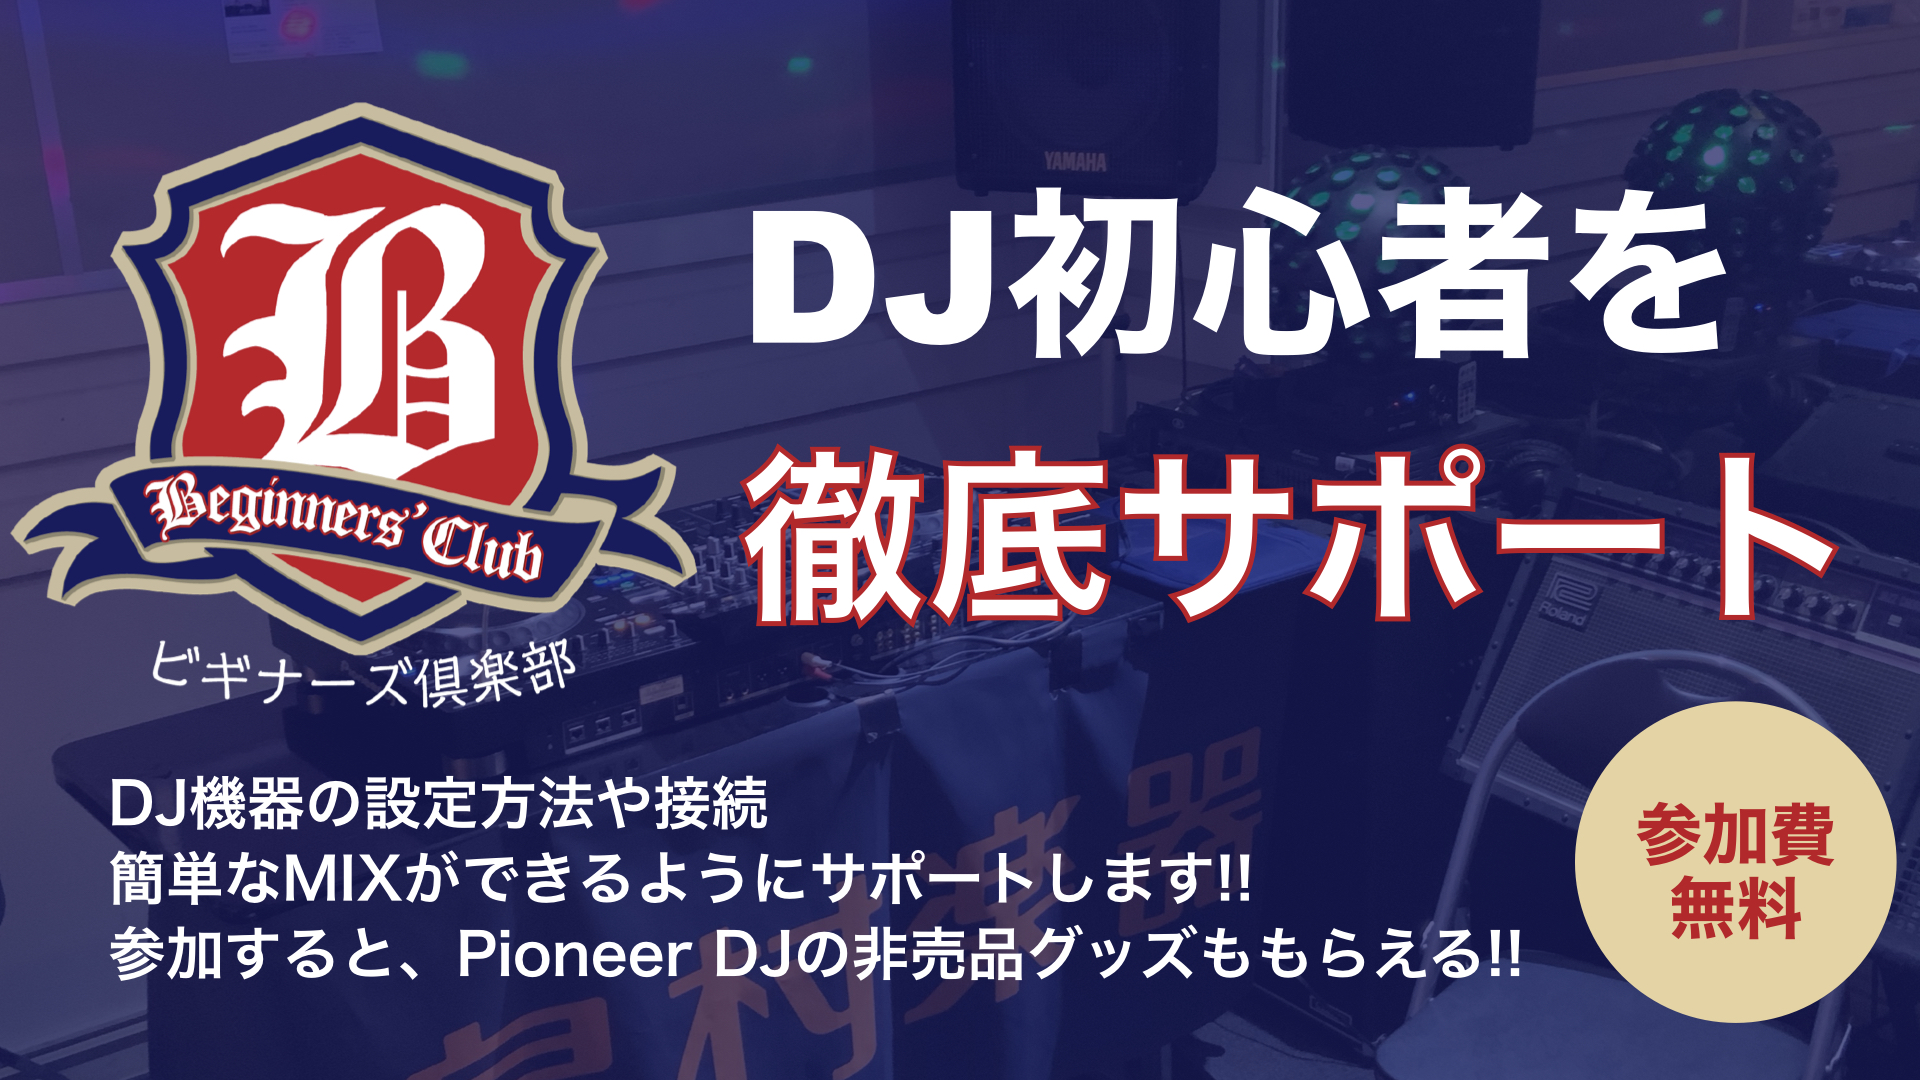 DJビギナーズ倶楽部・札幌ステラプレイス店の開催スケジュール